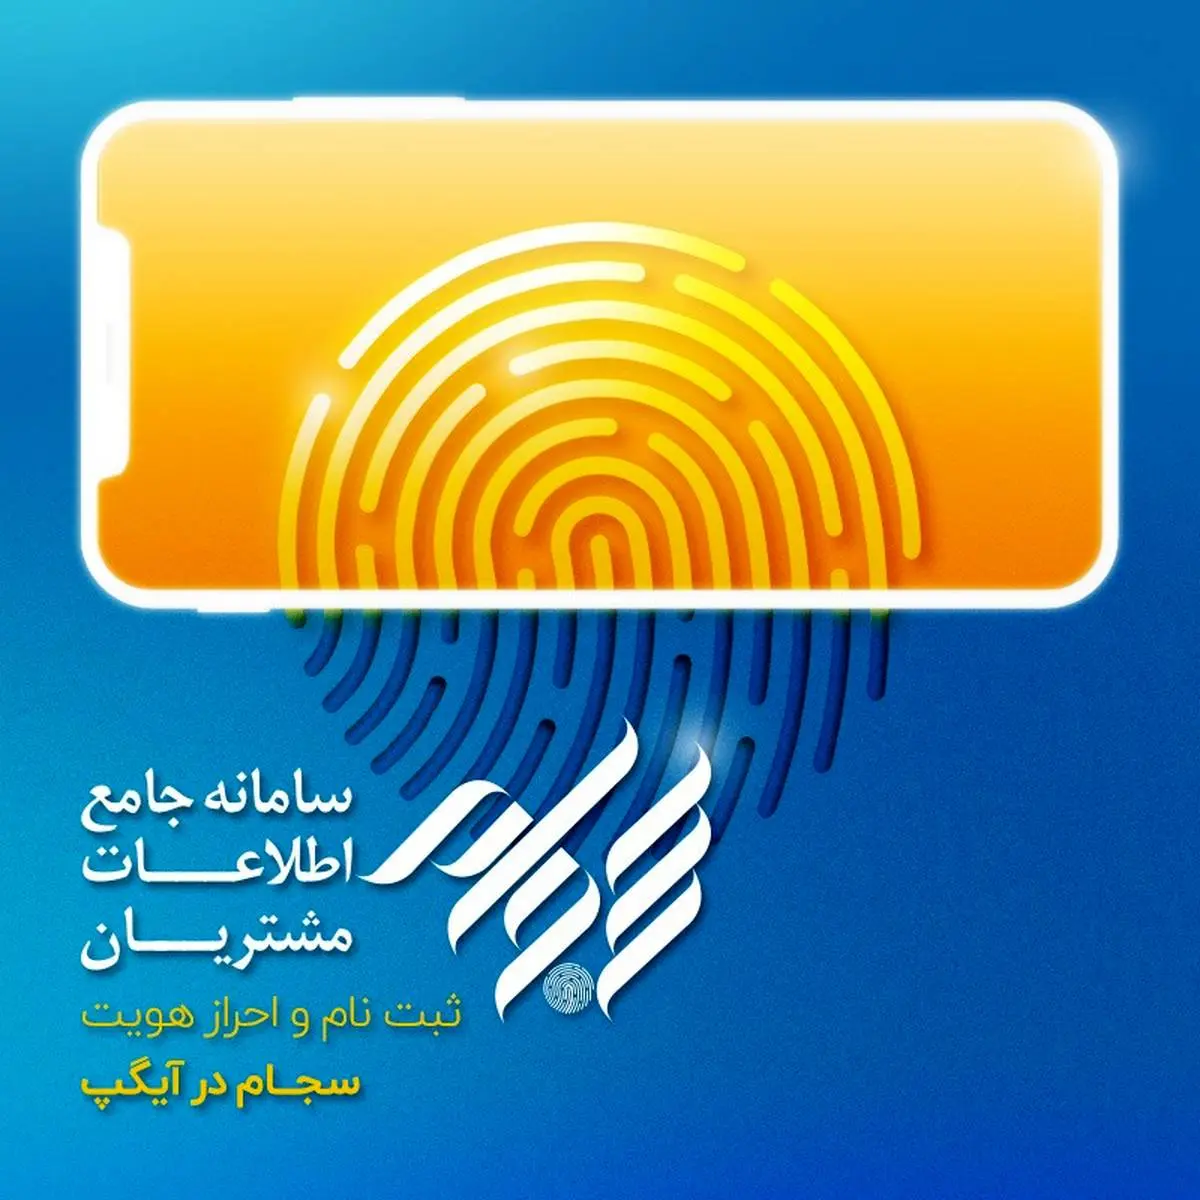 ثبت‌نام و احراز هویت سجام در اپلیکیشن آیگپ

